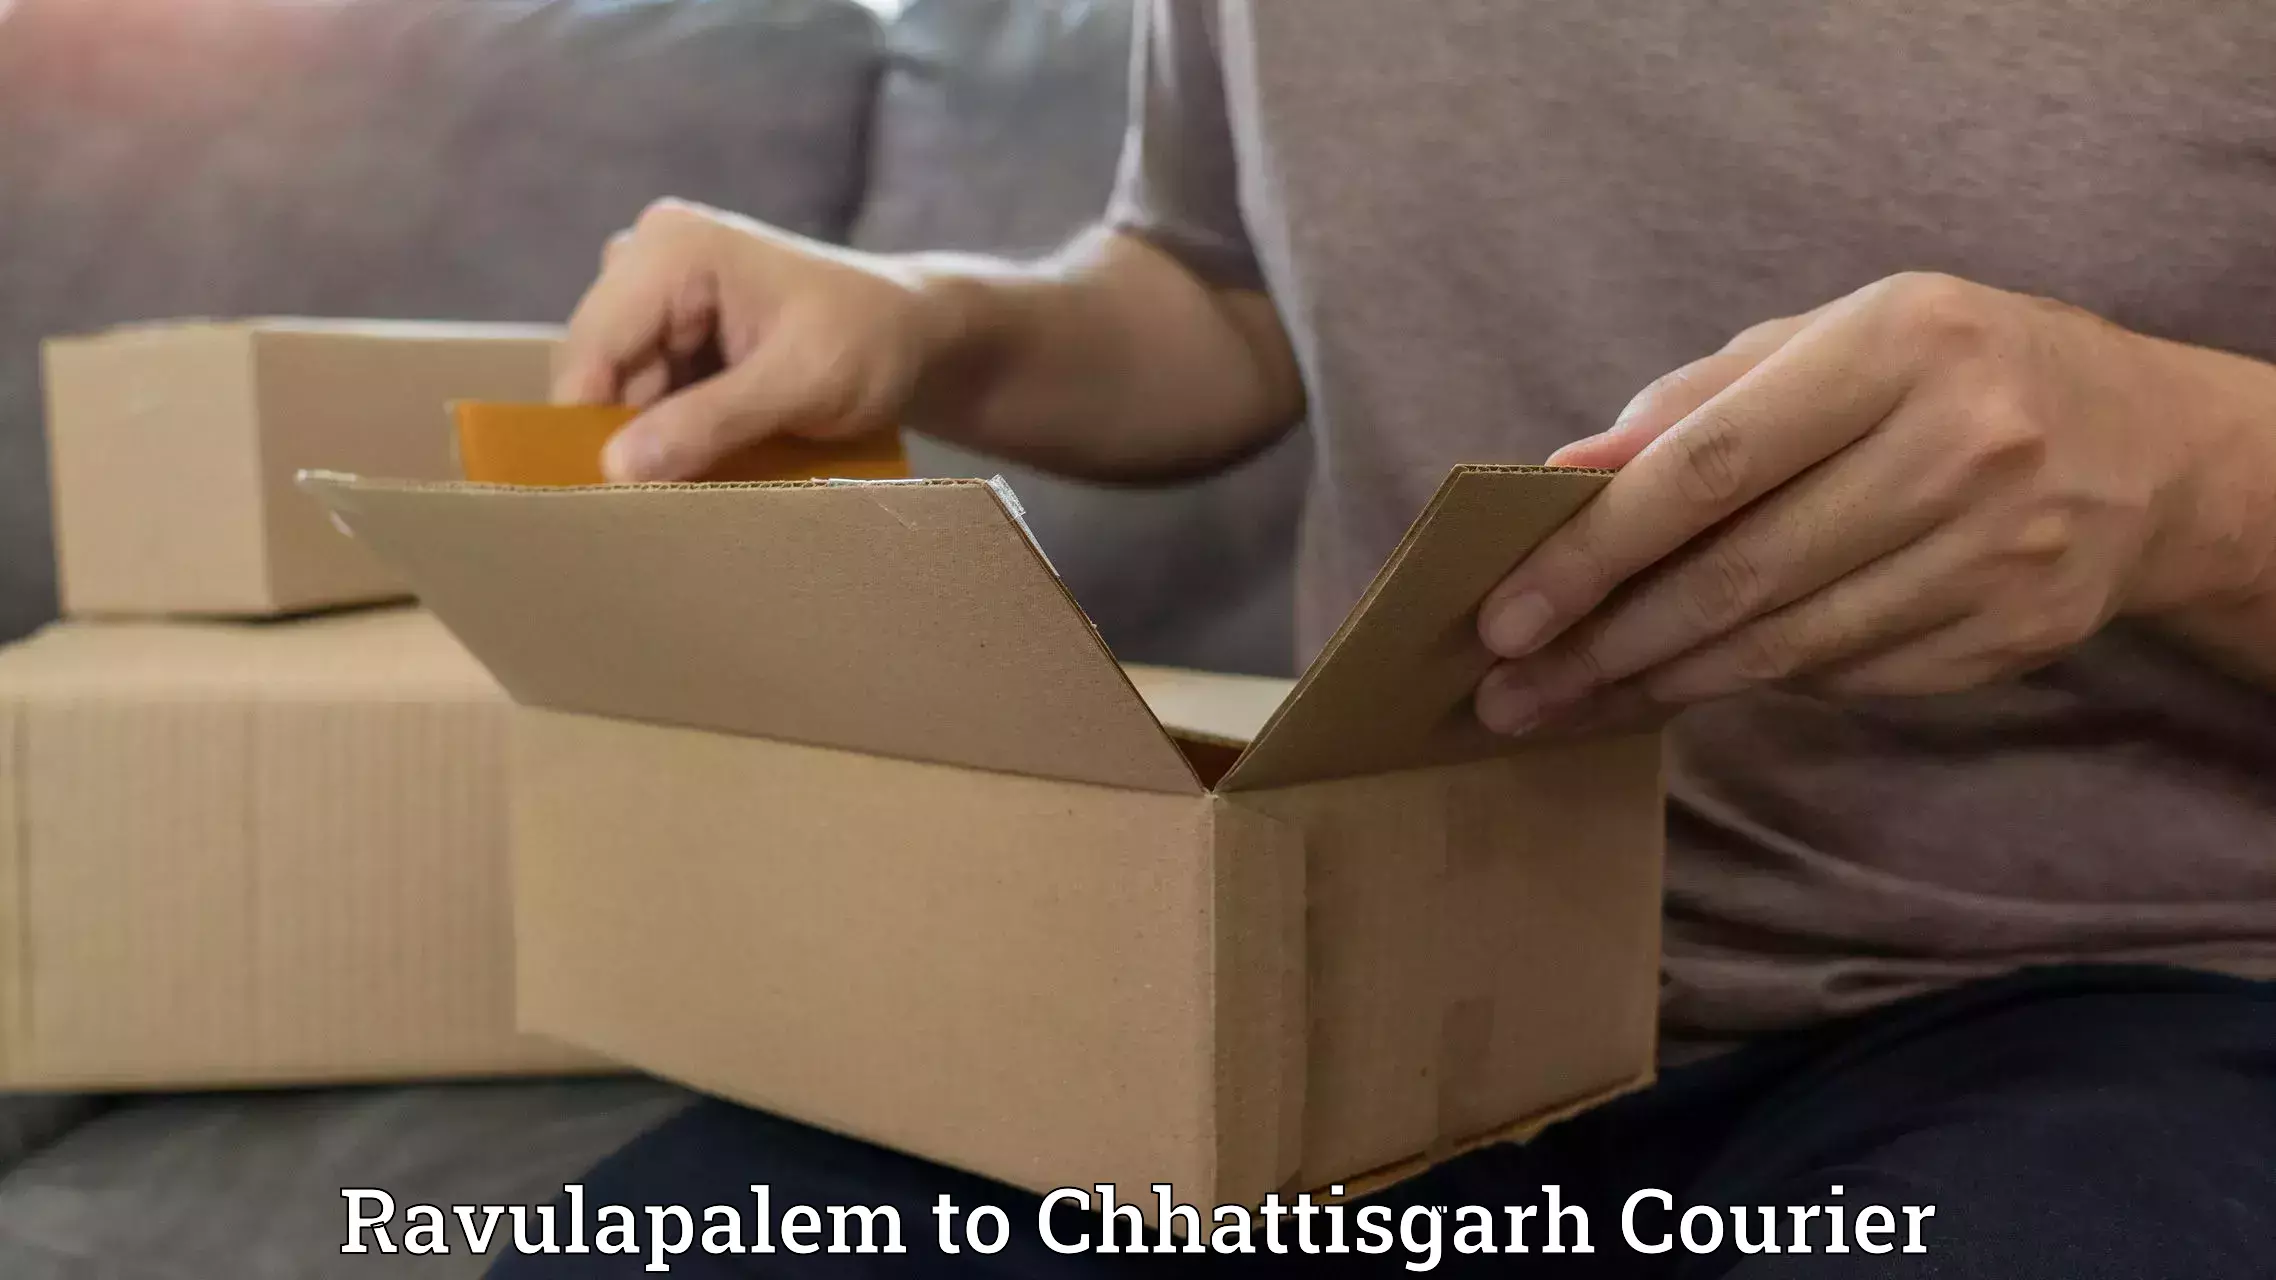 Special handling courier Ravulapalem to Bijapur Chhattisgarh